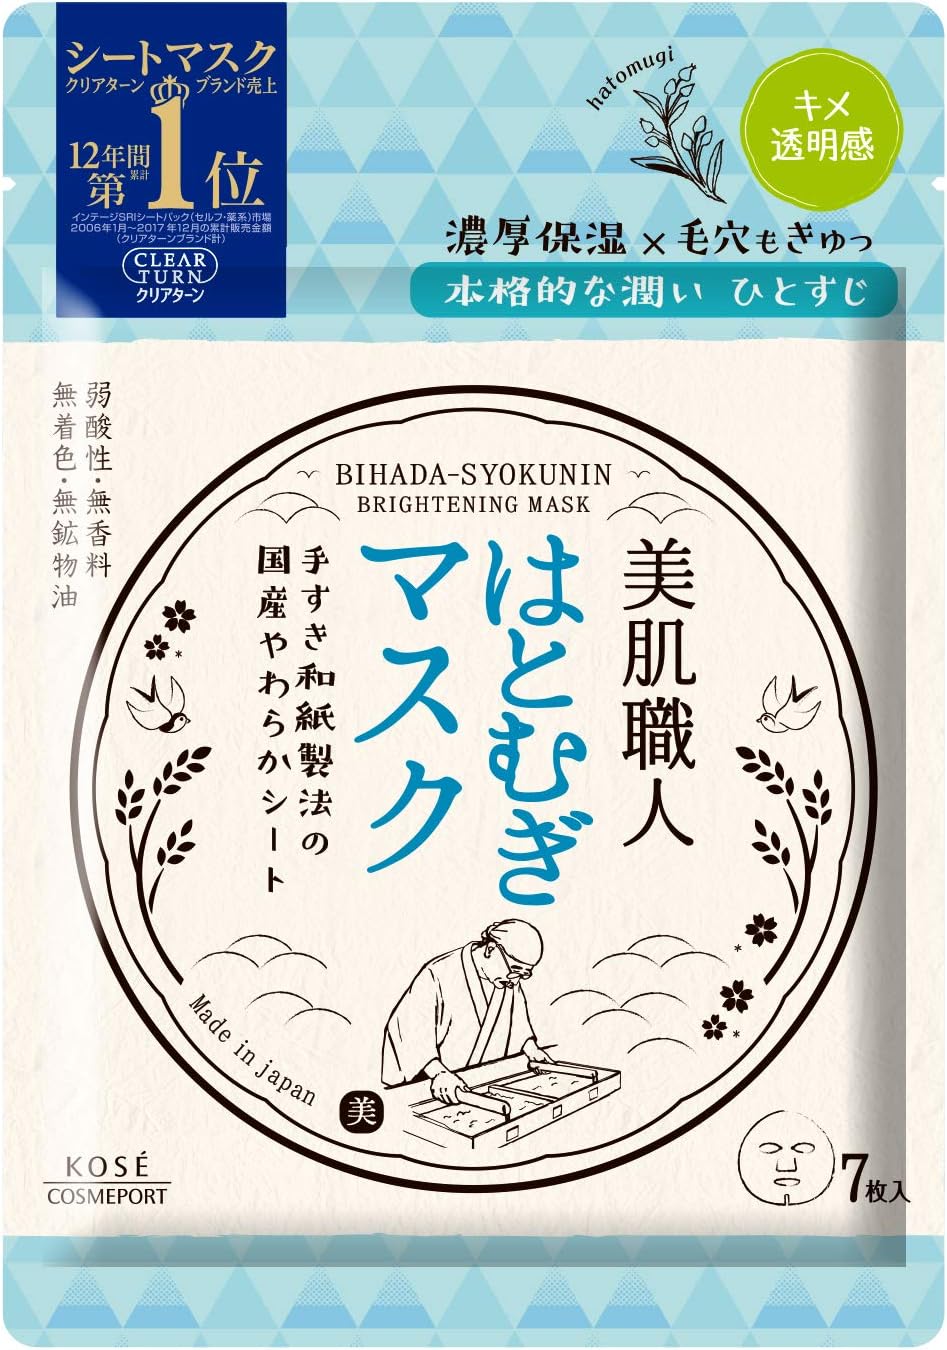 Kose Clear Turn Skin Craftsman Hatomugi Mask - 7 sheets - NihonMura